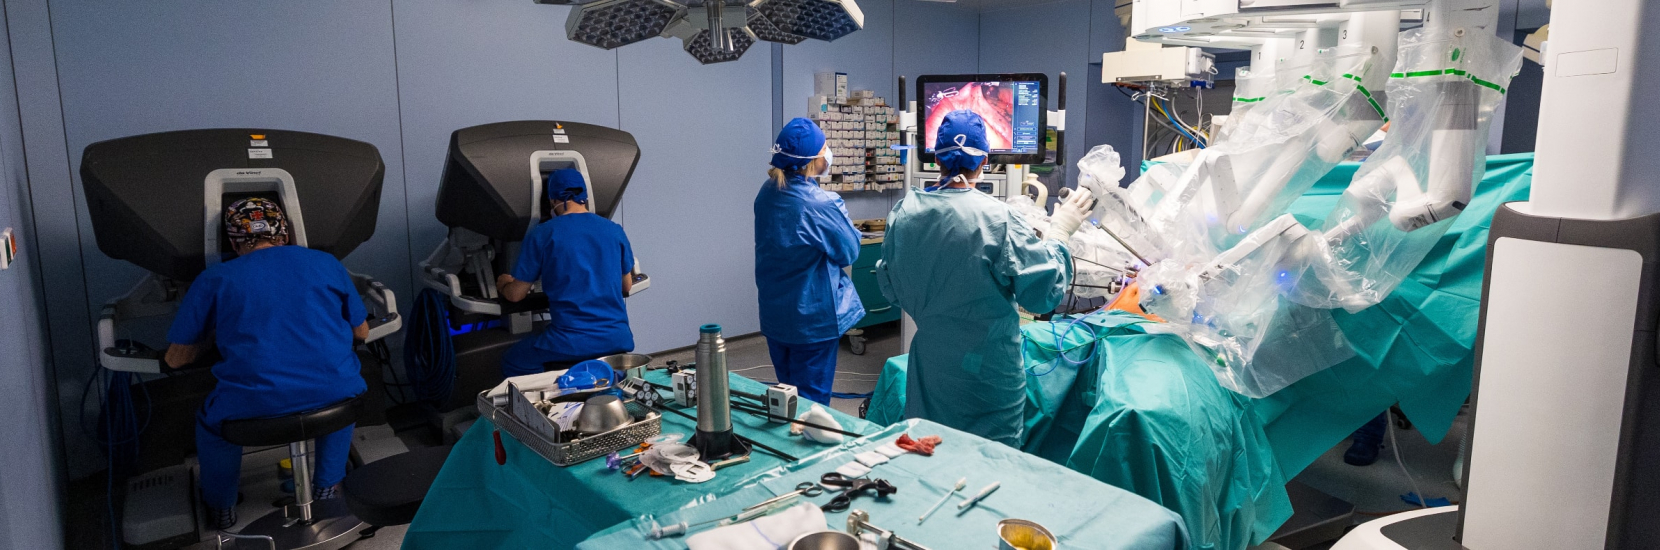 Programme de préhabilitation au CHL : préparer les patients à une chirurgie lourde pour améliorer leur convalescence